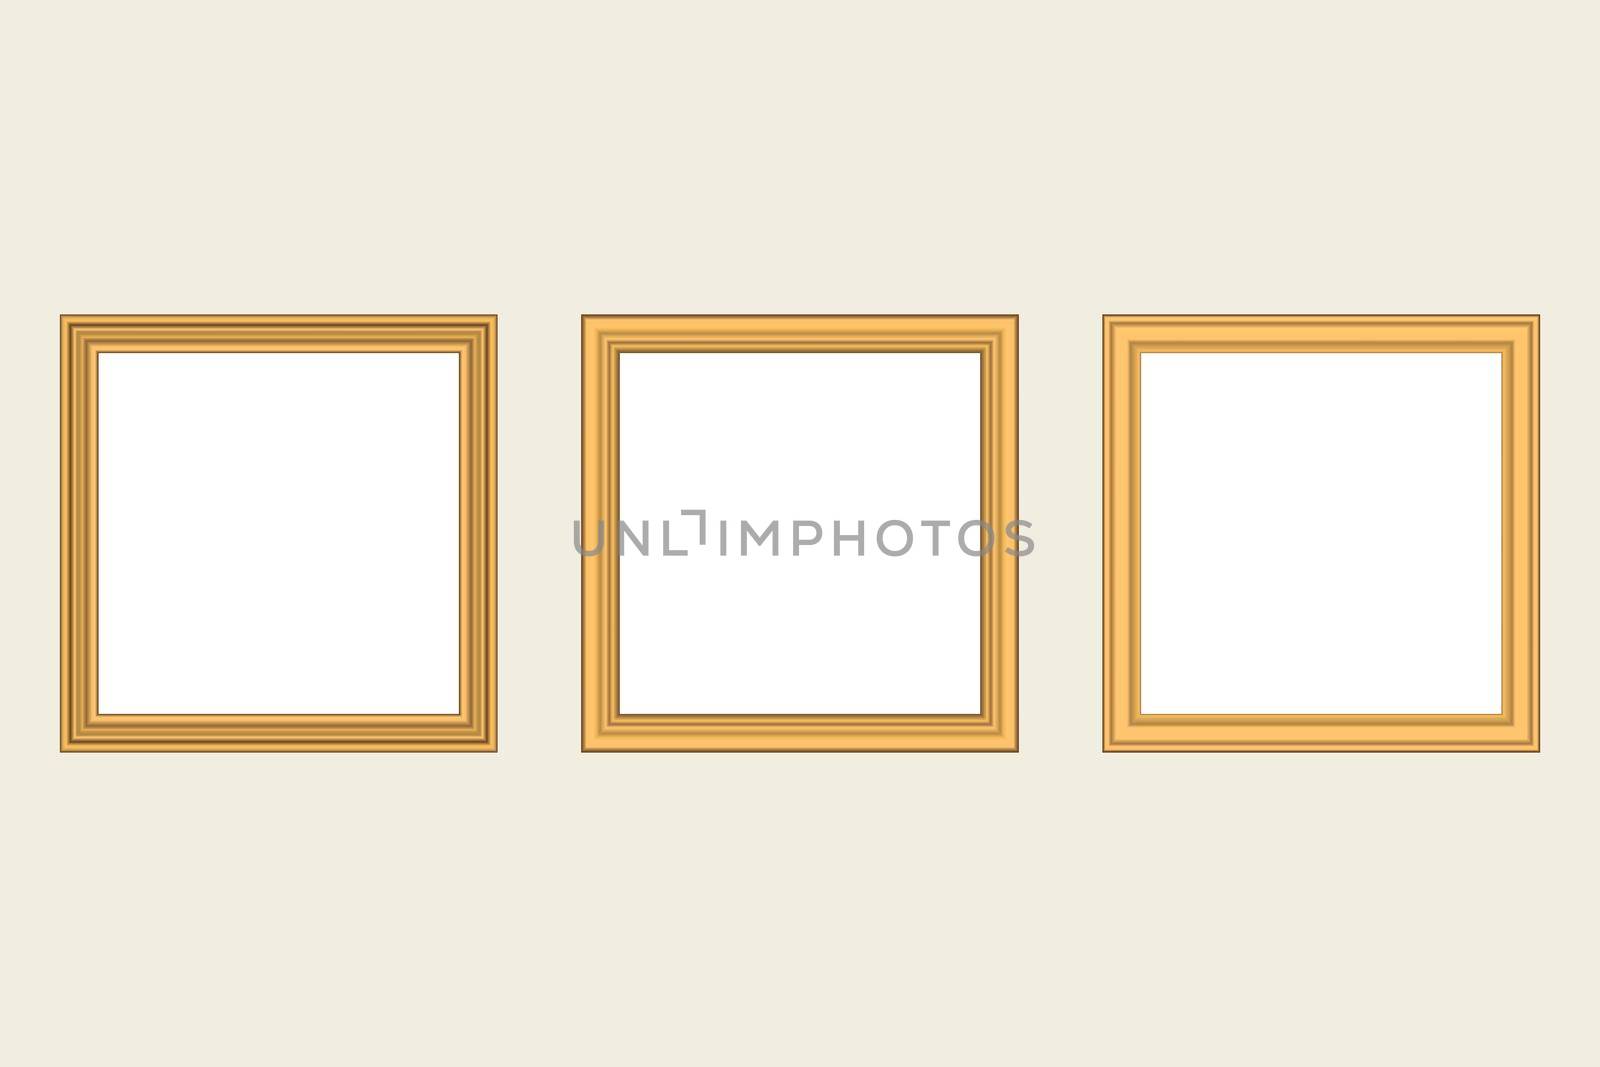 Set of squared golden vintage wooden frame for your design. Vintage cover. Place for text. Vintage antique gold modern rectangular frames. Template vector illustration by allaku